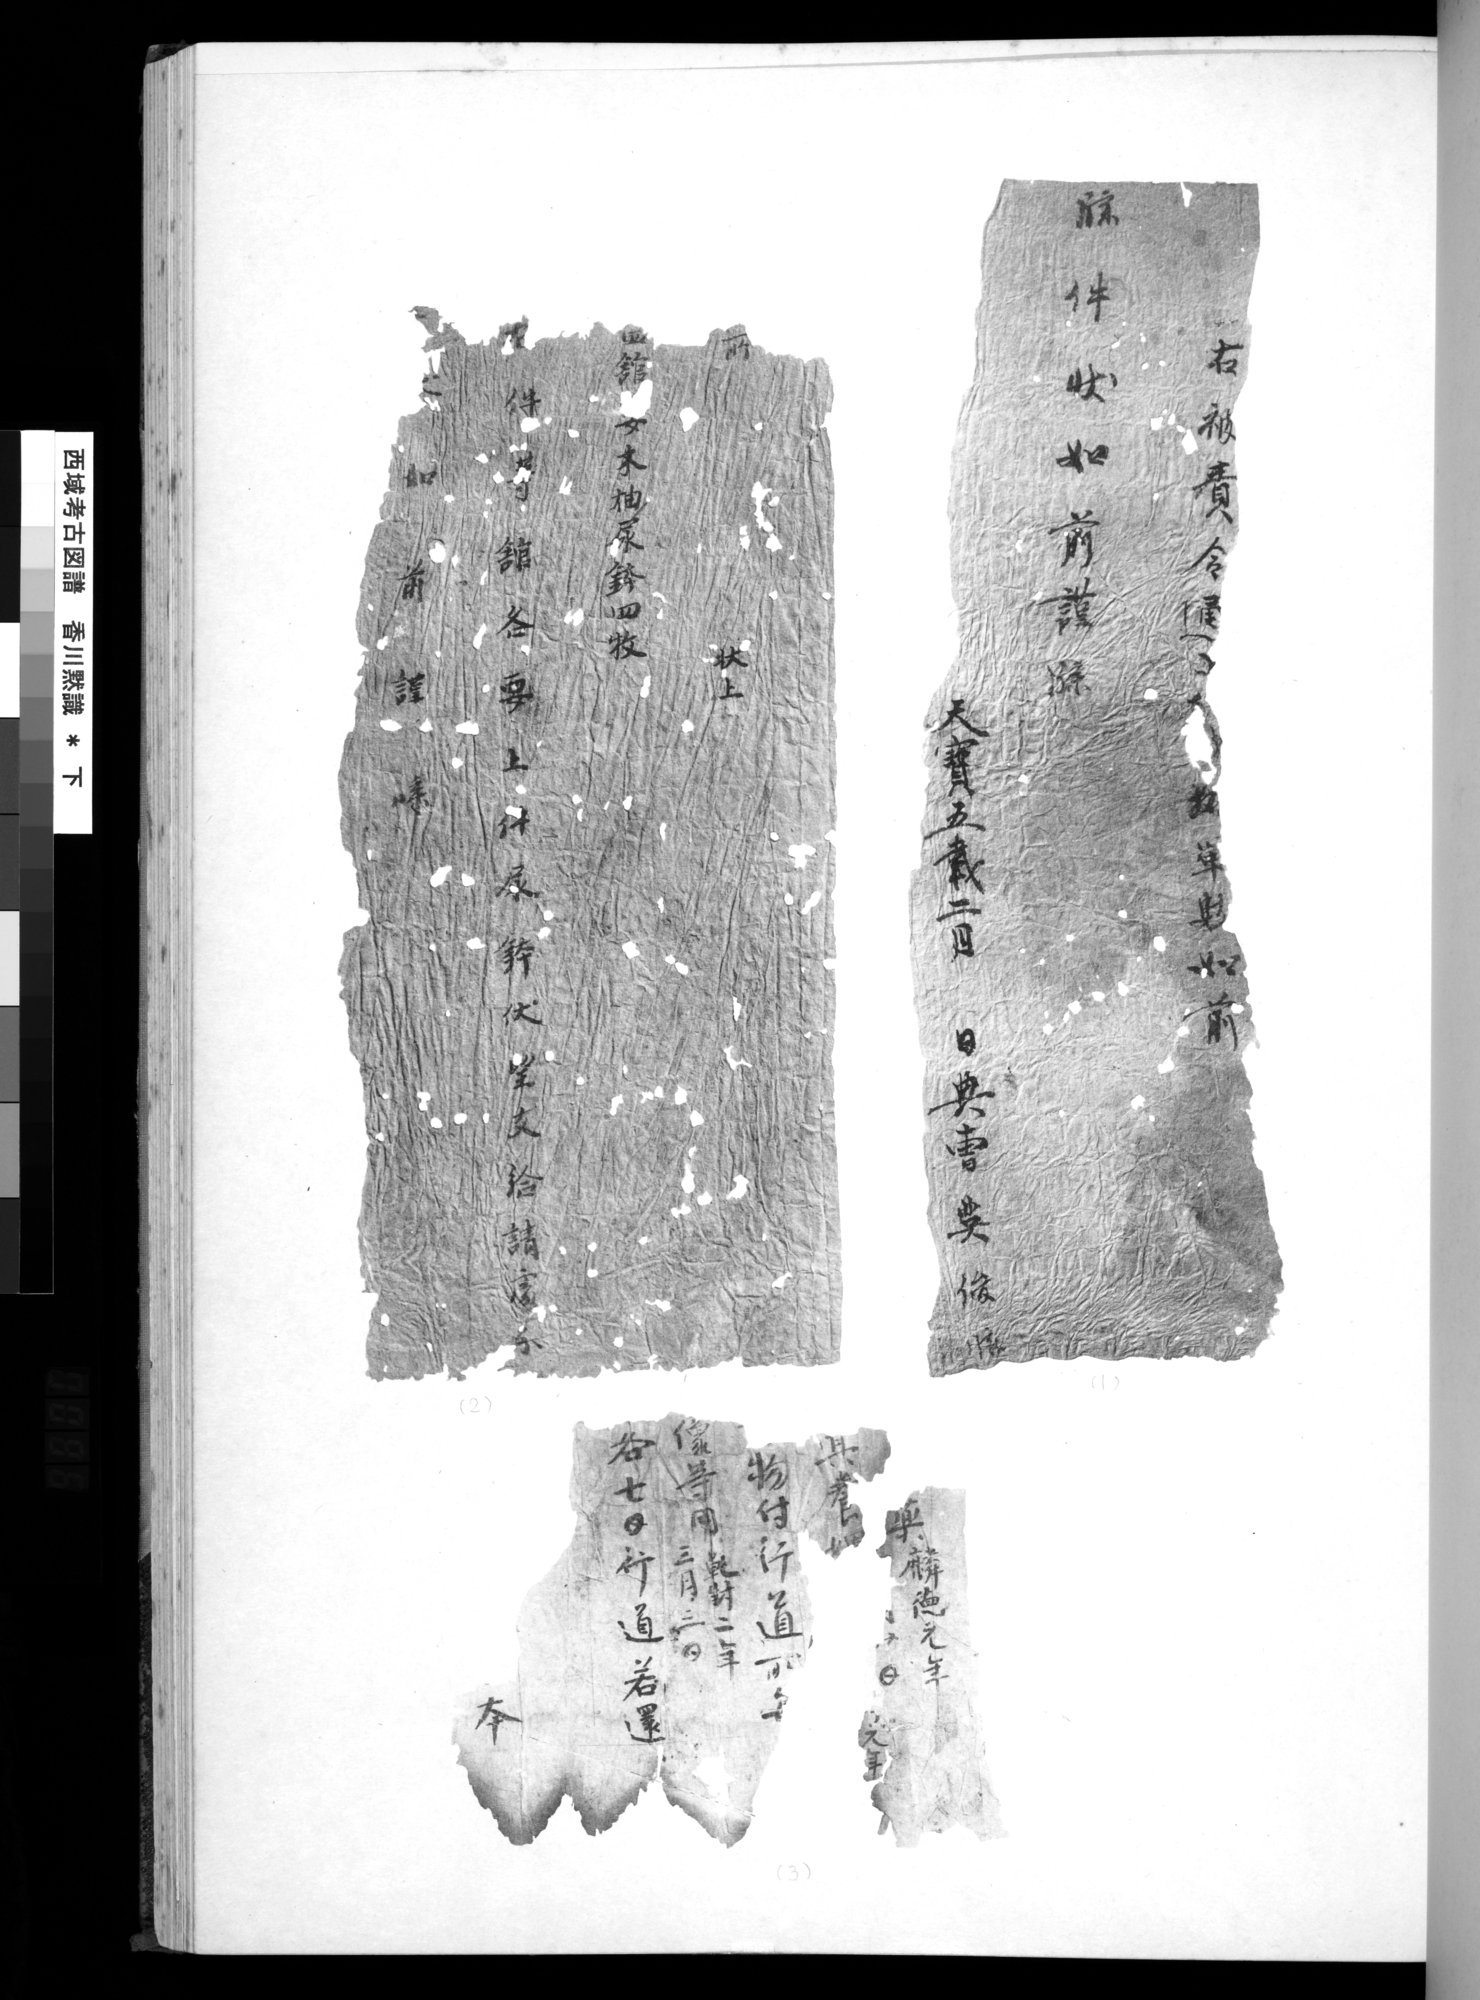 西域考古図譜 : vol.2 / Page 191 (Grayscale High Resolution Image)